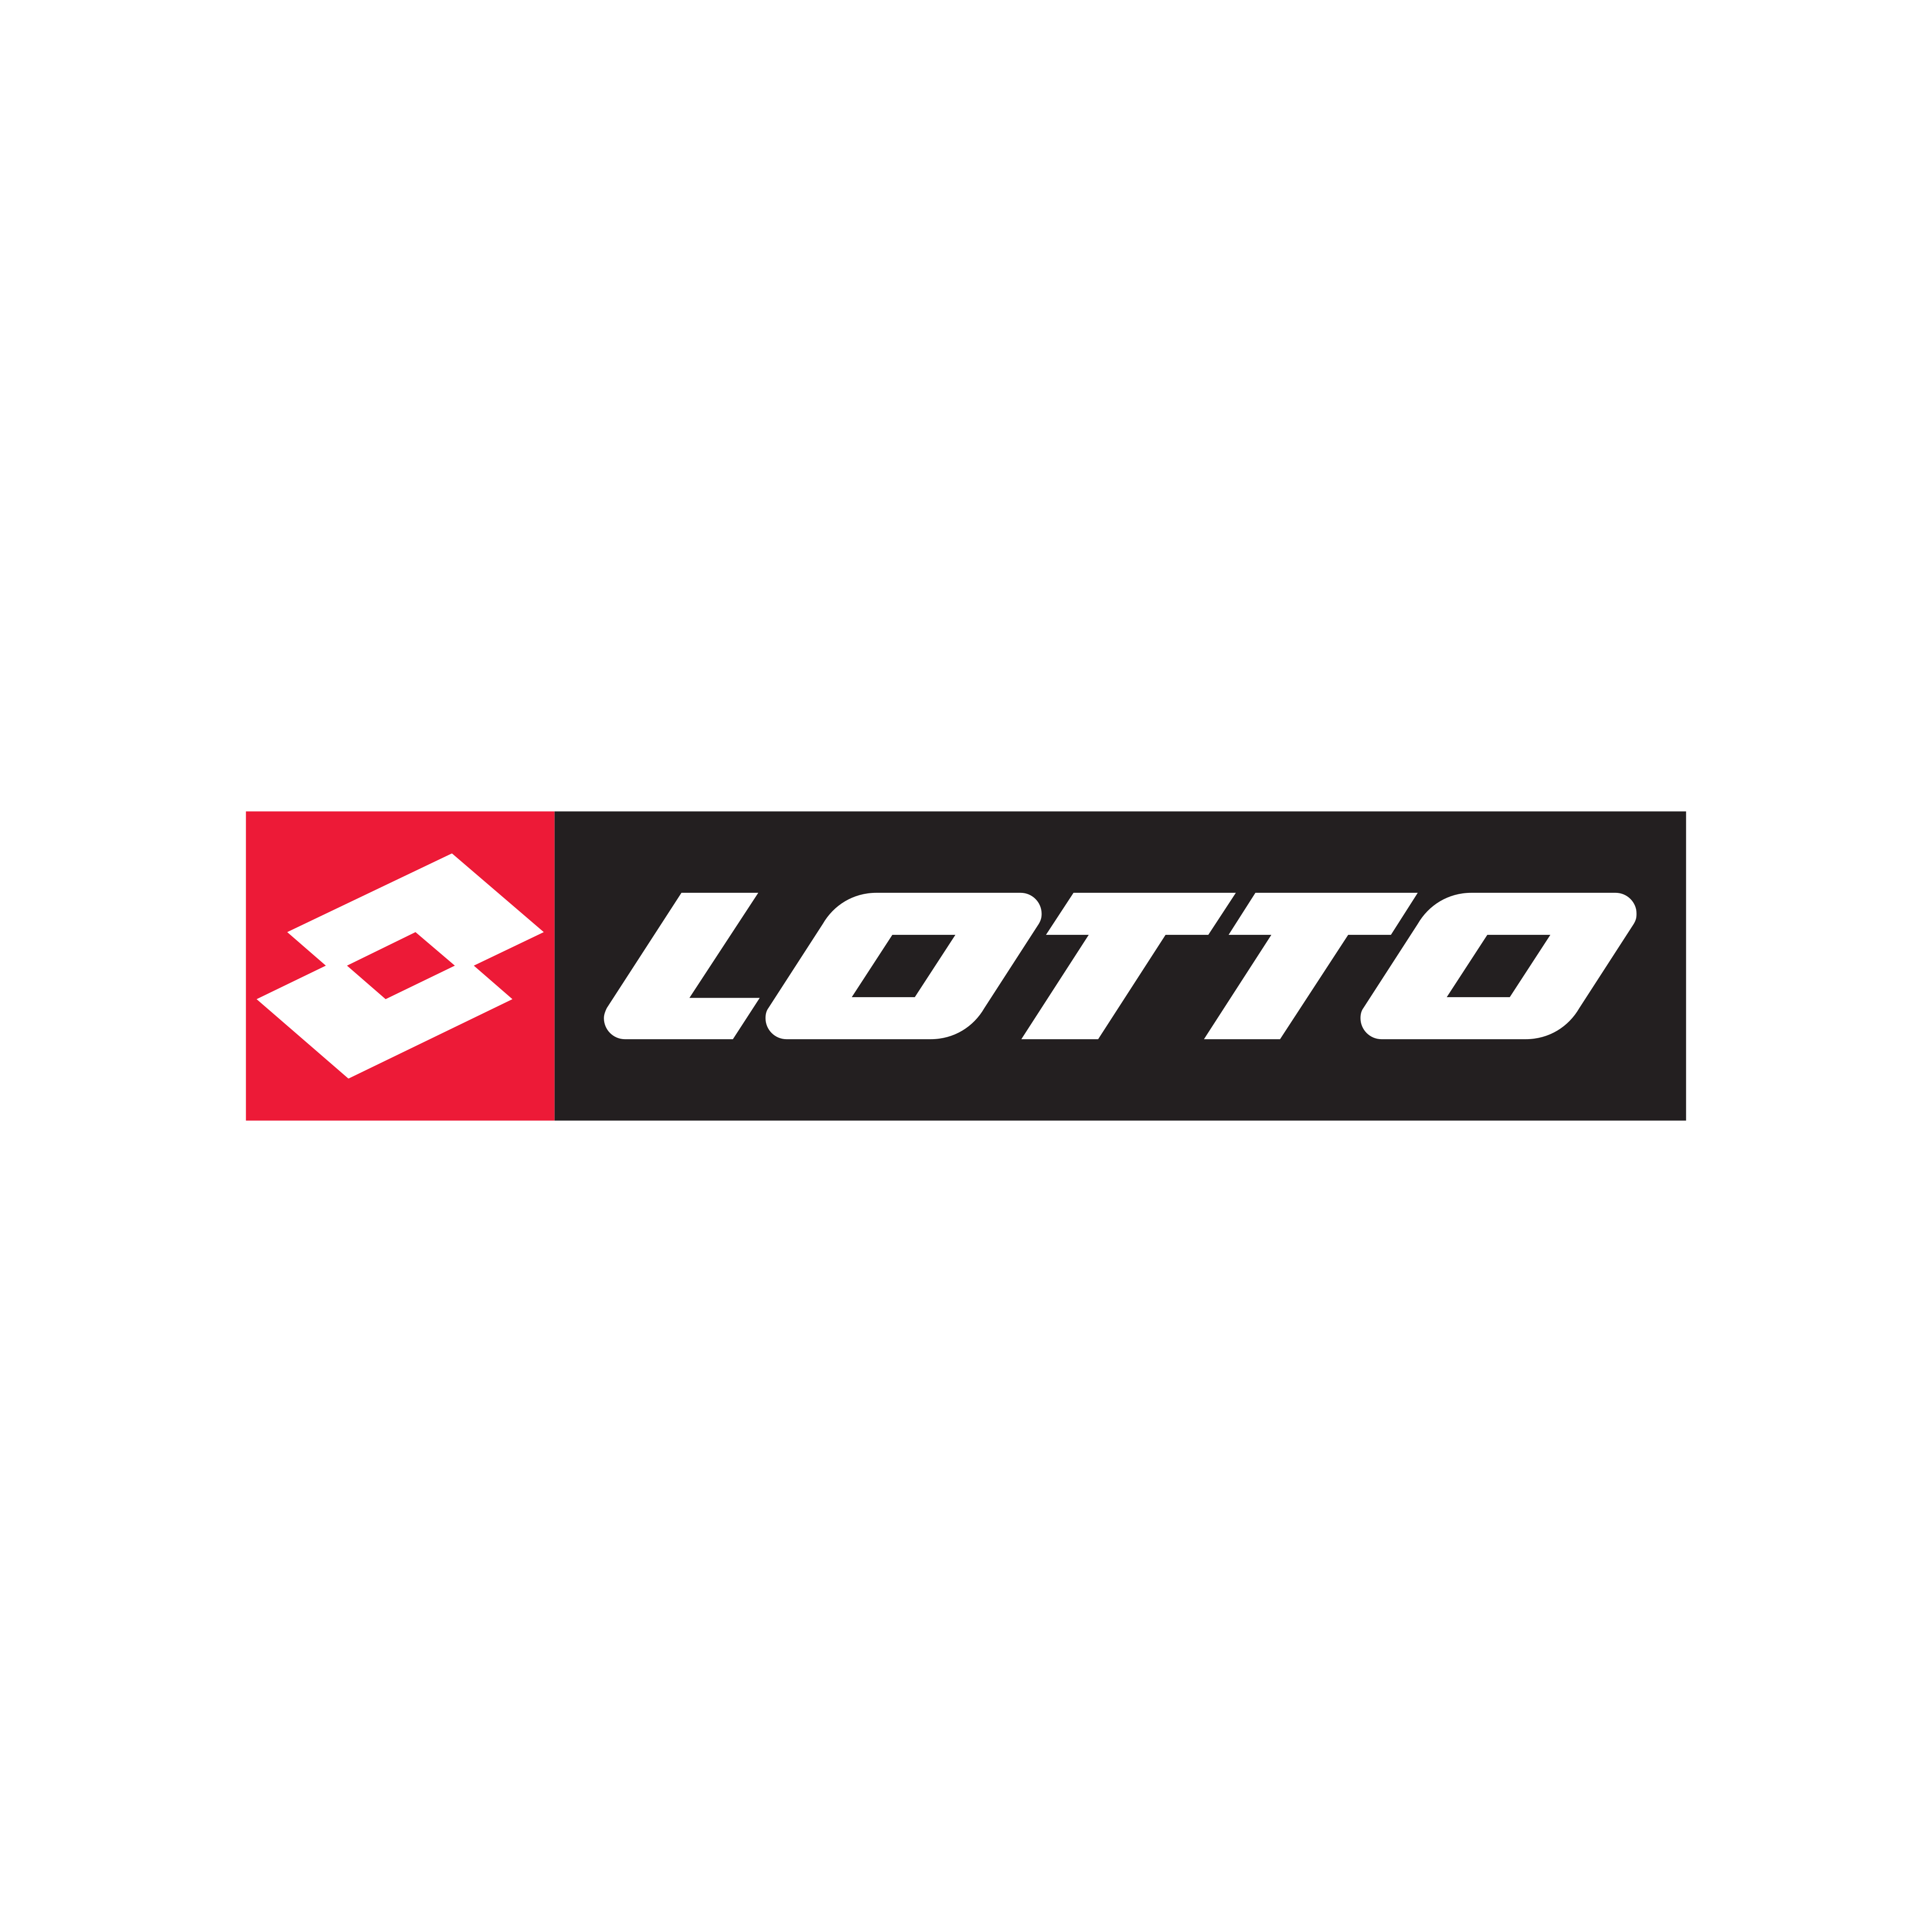 lotto logo 0 - Lotto Logo